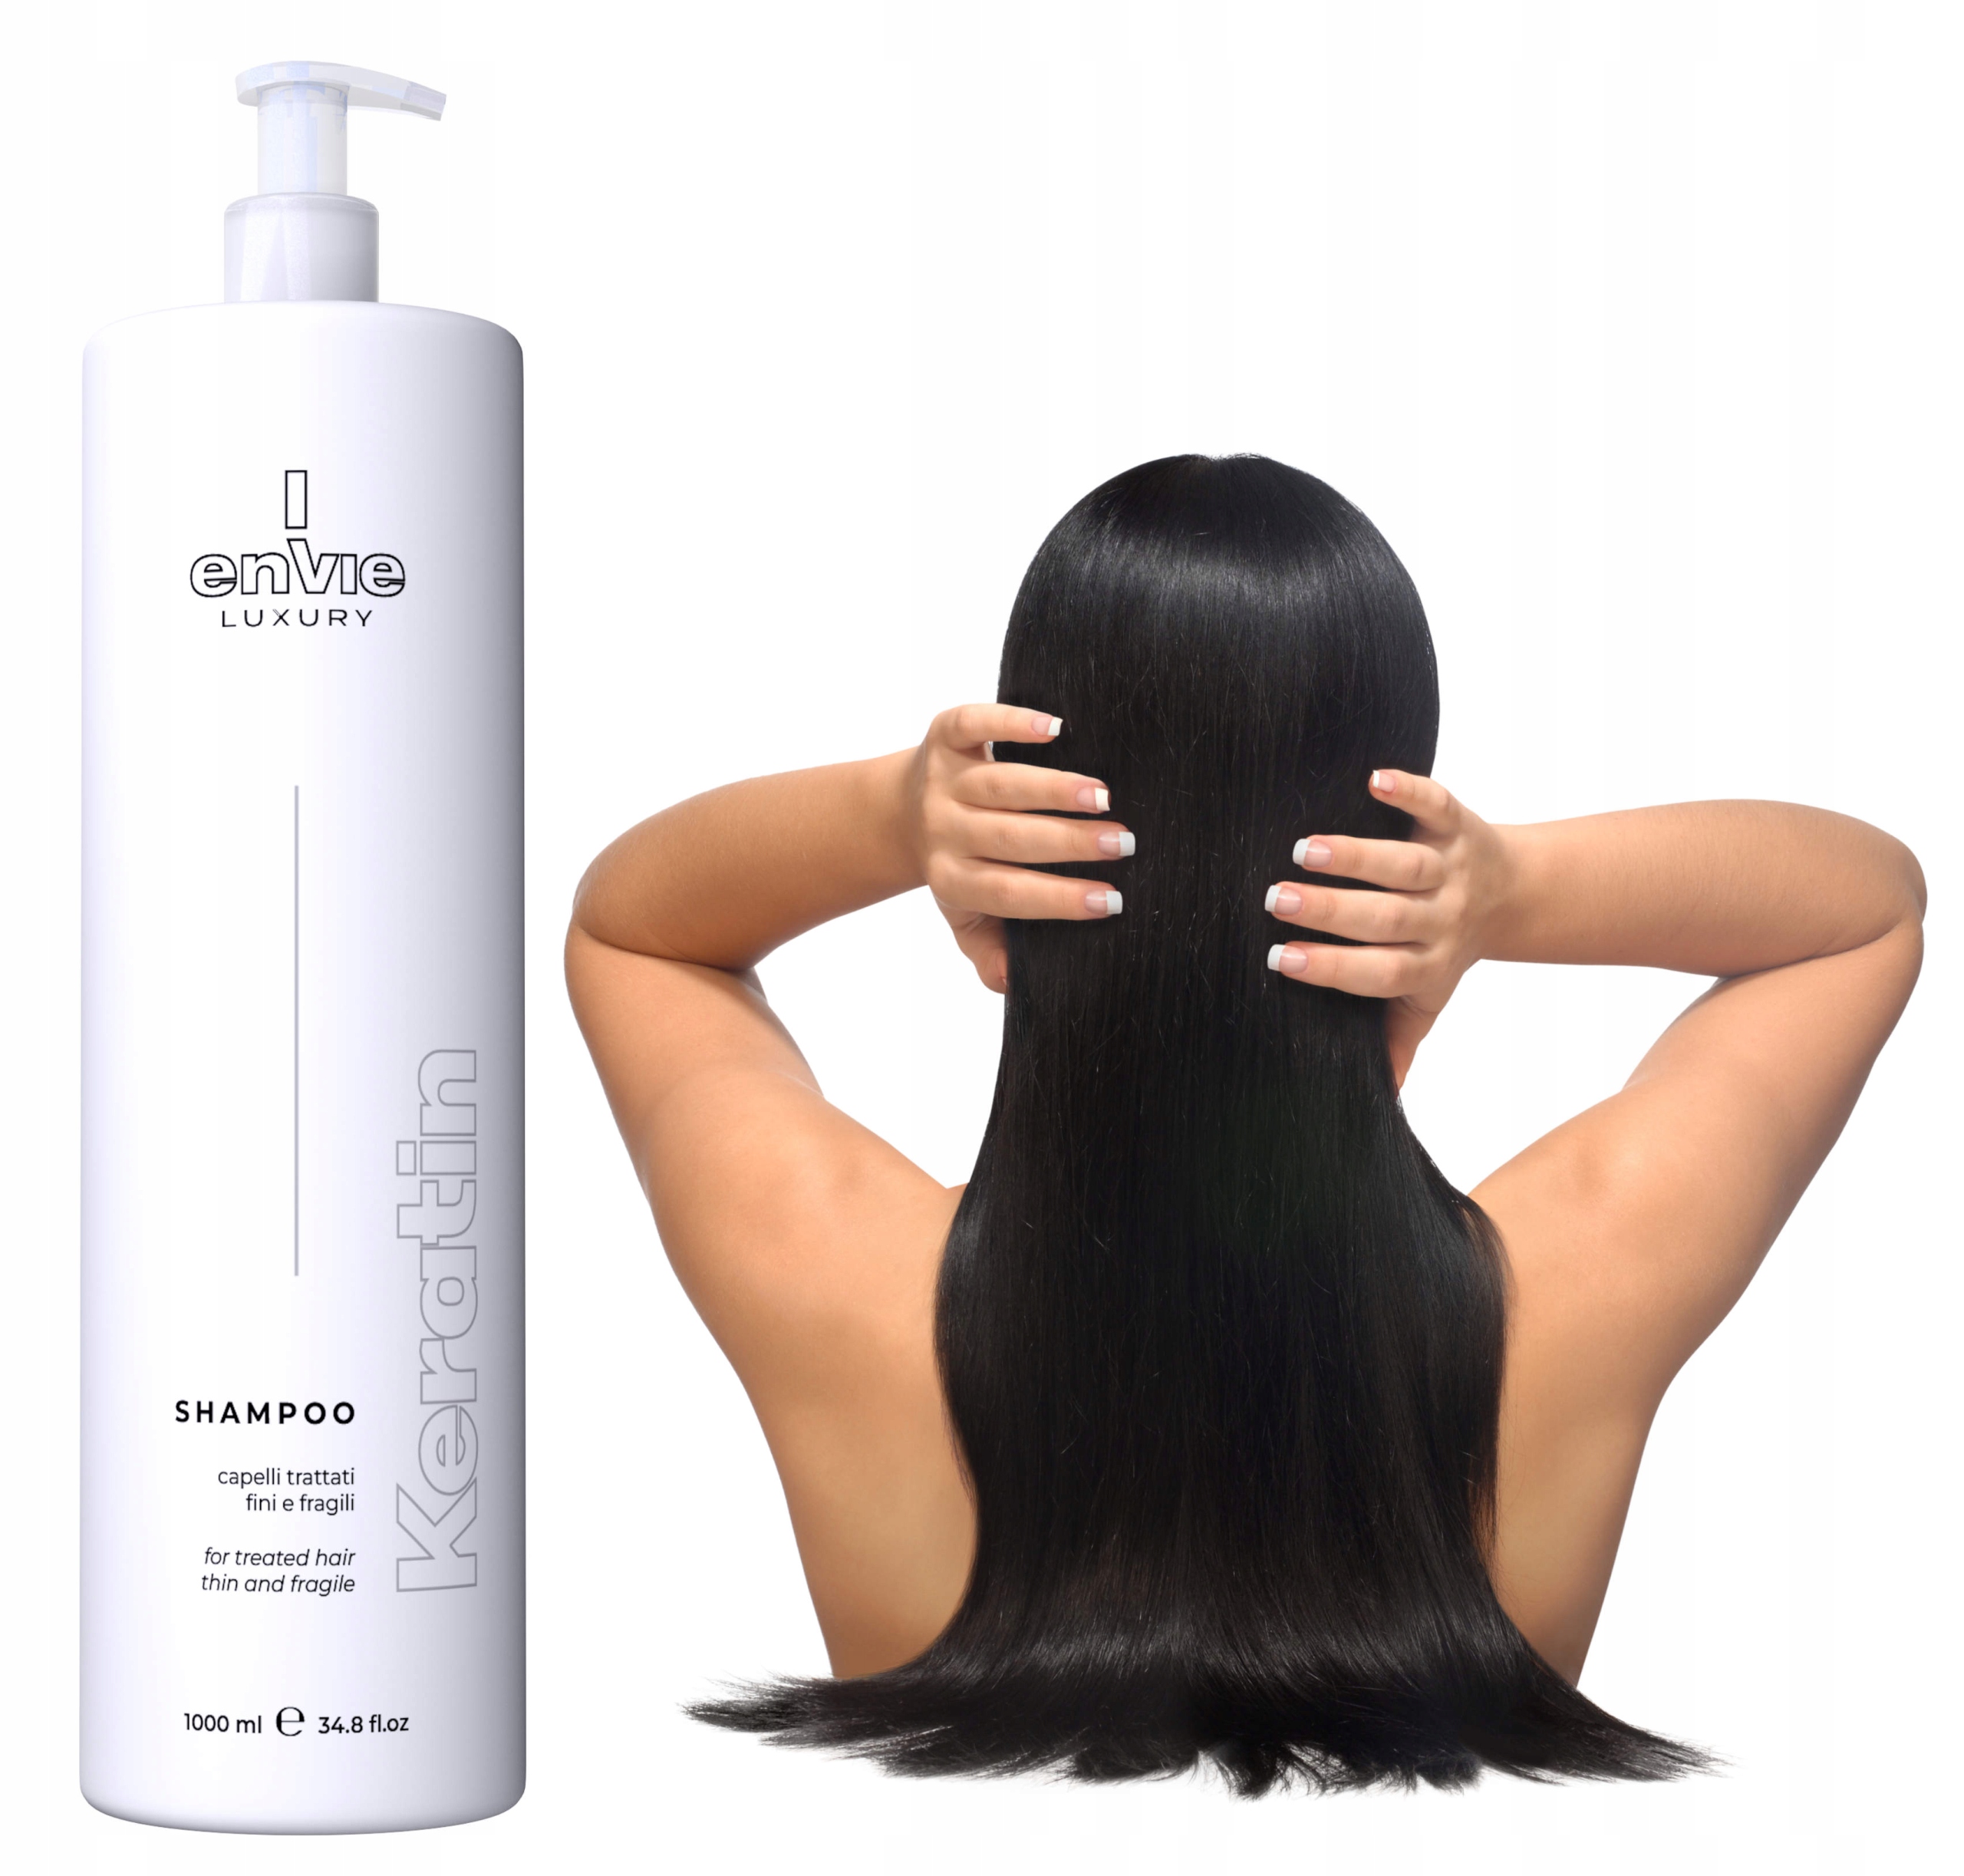 szampon i odżywka po keratynowym prostowaniu włosów allegro